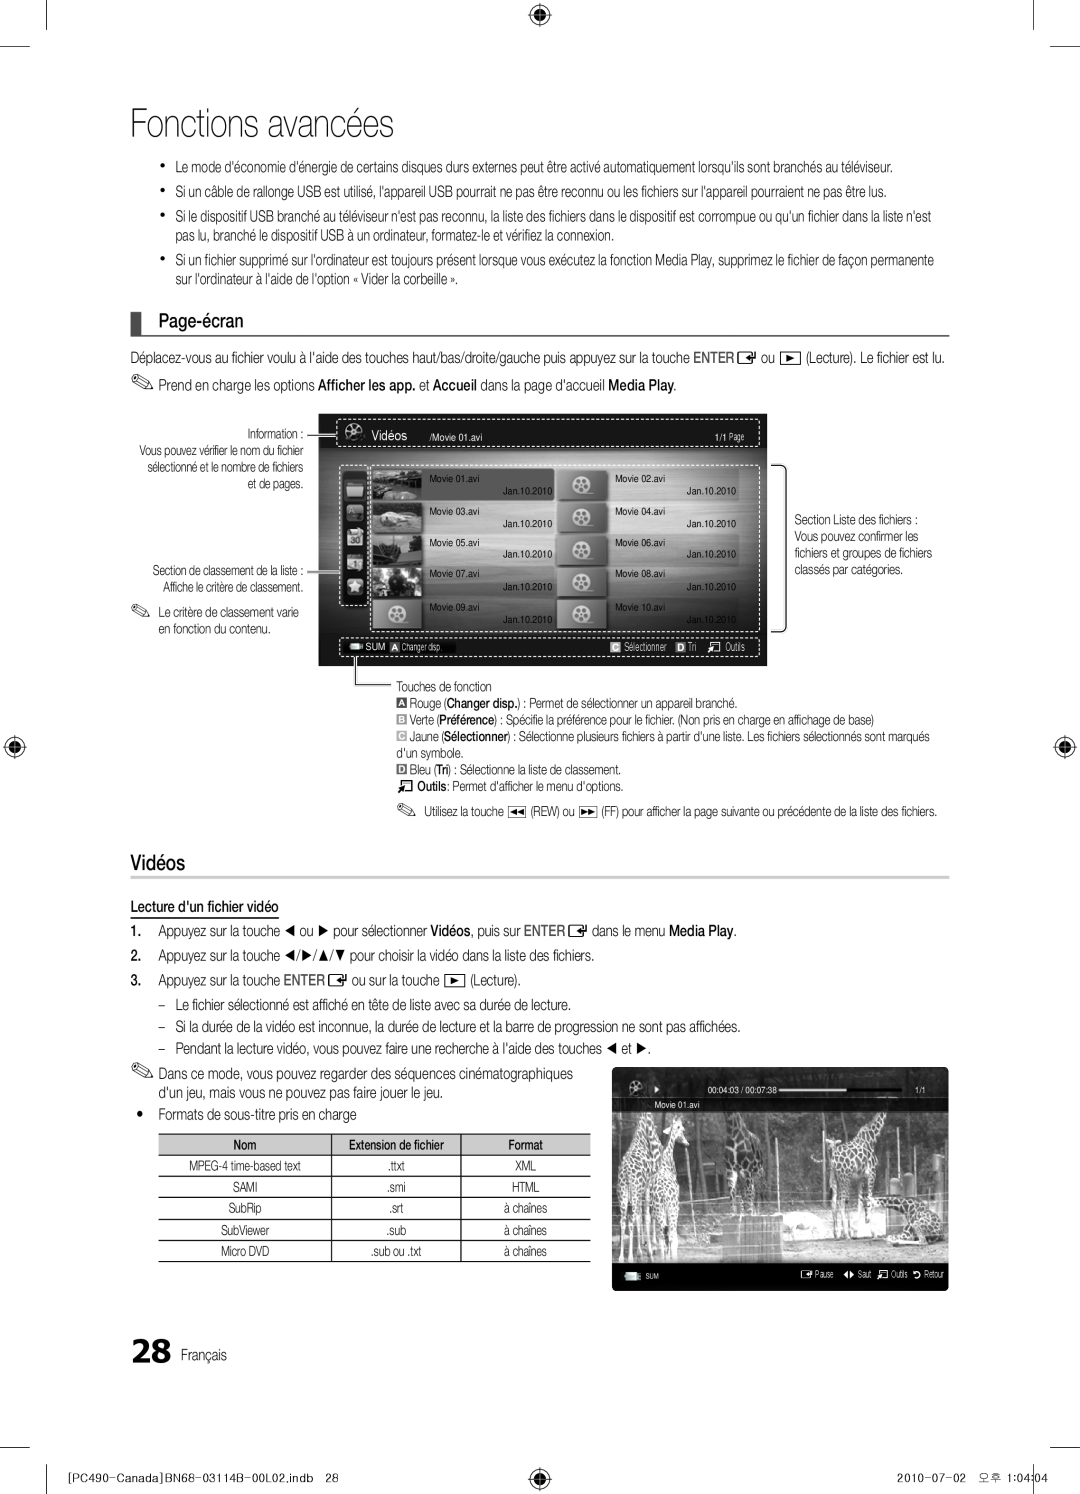 Samsung Series P4+ 490, BN68-03114B-01, PN50C490 user manual Vidéos, Page-écran, Fonctions avancées 